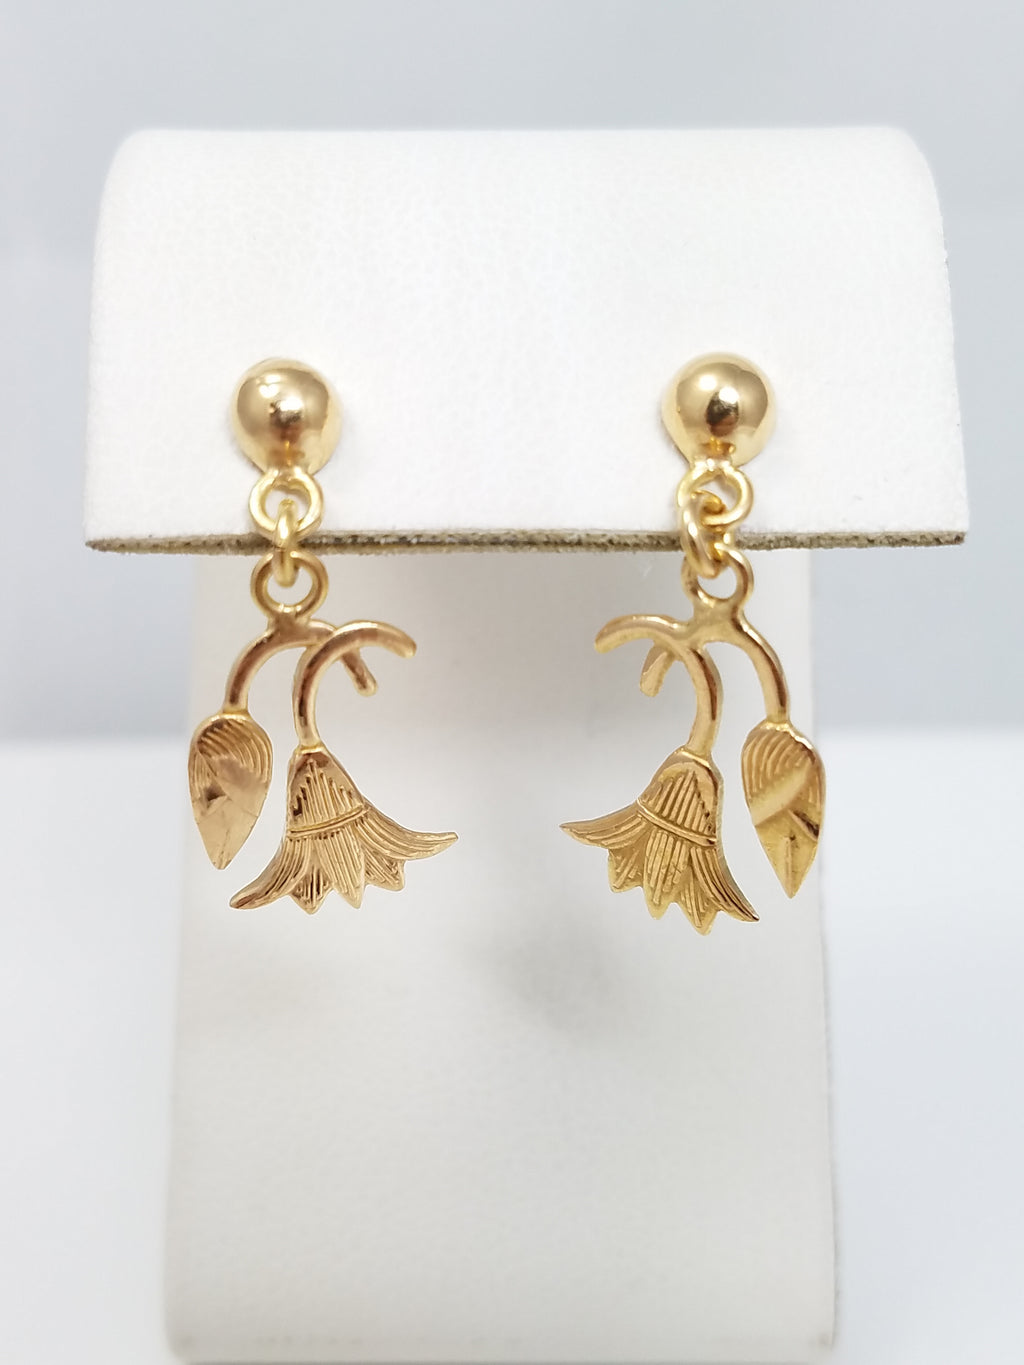 Vintage 18k Yellow Gold Dangling Flower Earrings